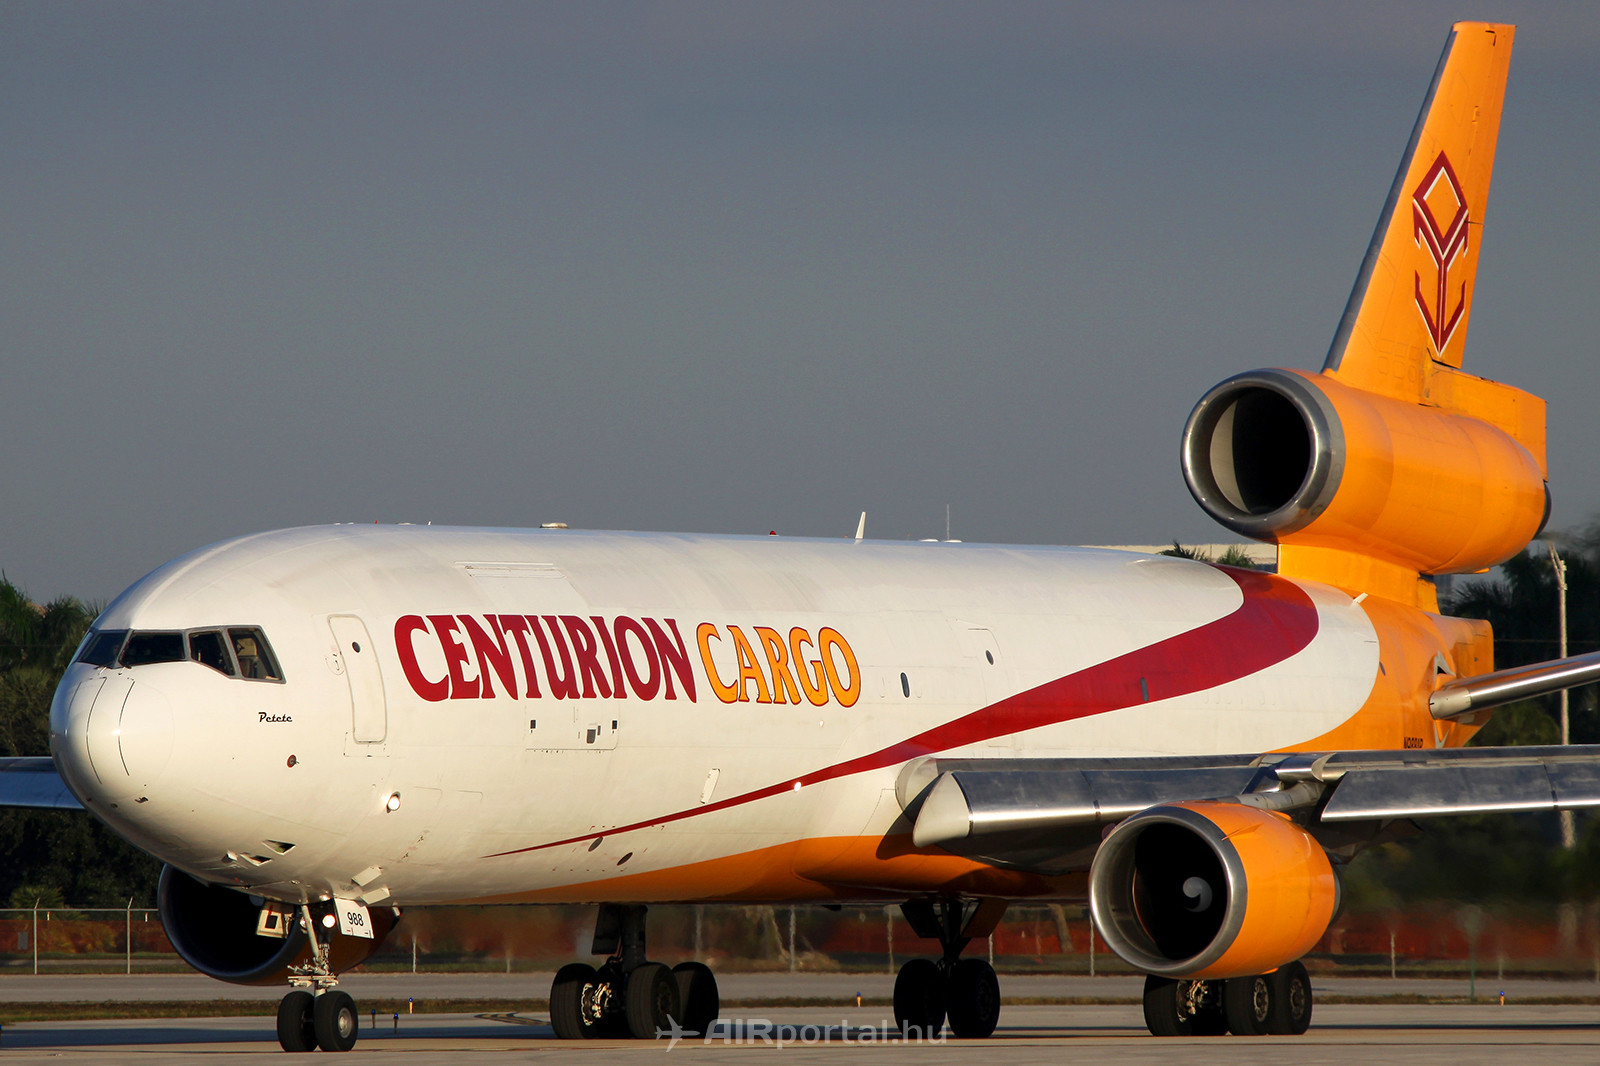 Az MD-11F flotta már a földön várja további sorsát. Bár a tulajdonosa követeli vissza a repülőgépeket, a Centurion visszatartja azokat. (Fotó: Samu Ádám - AIRportal.hu) | © AIRportal.hu